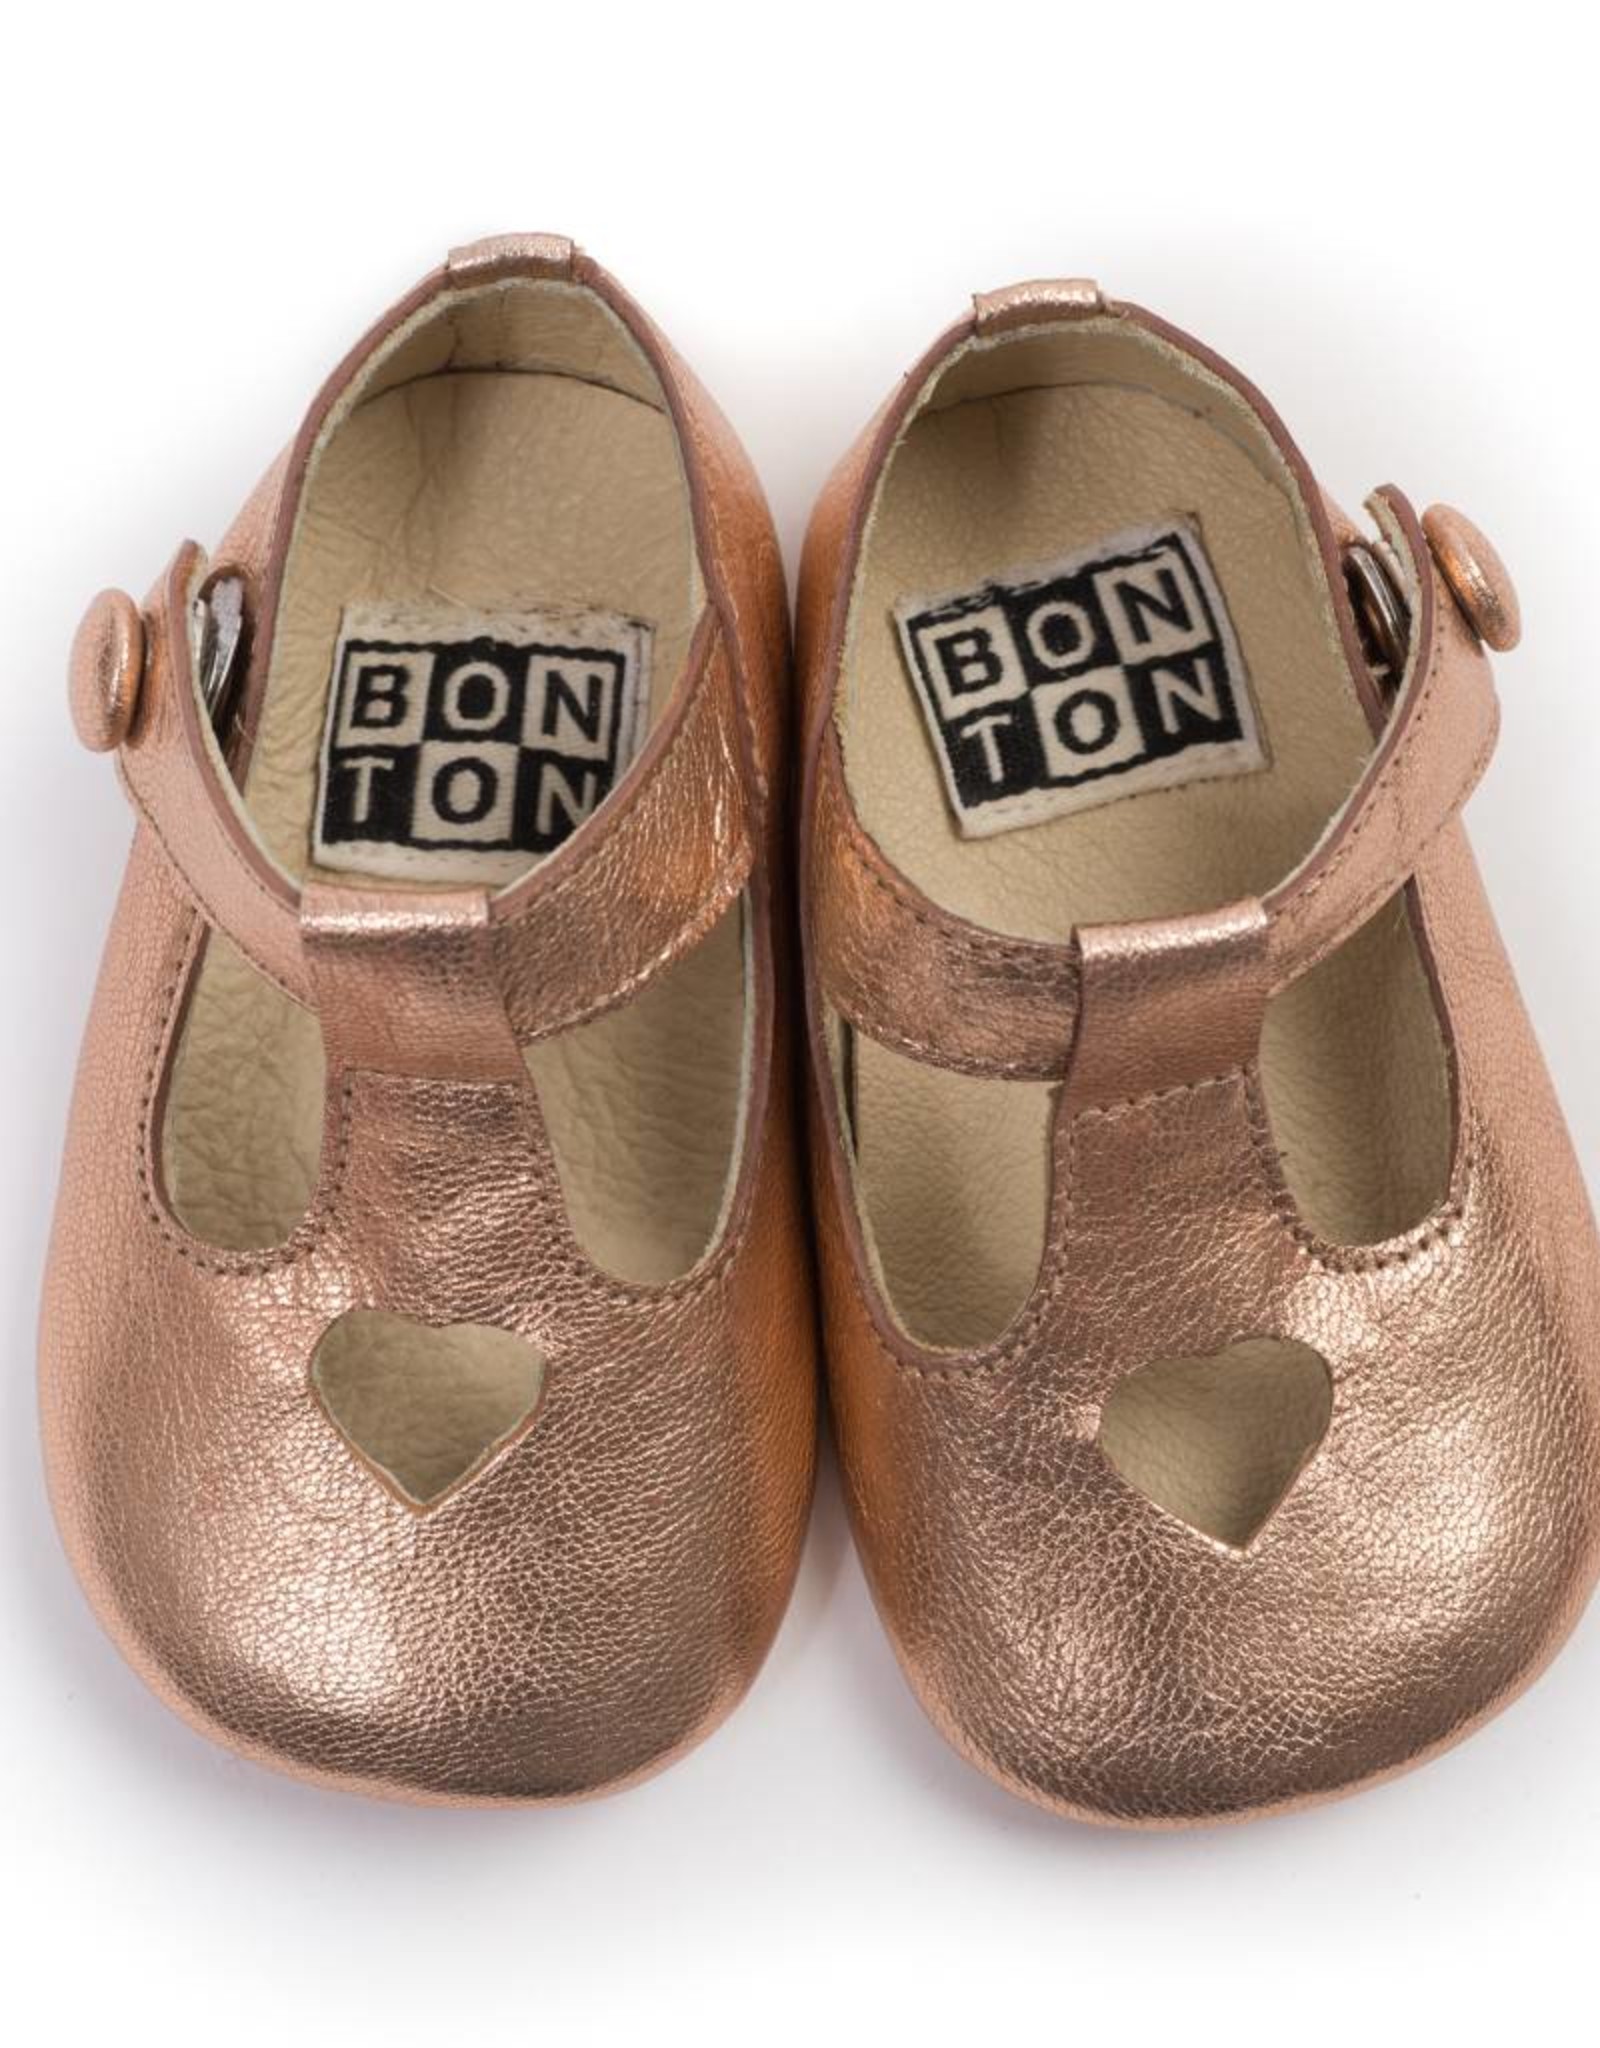 Bonton Slippers